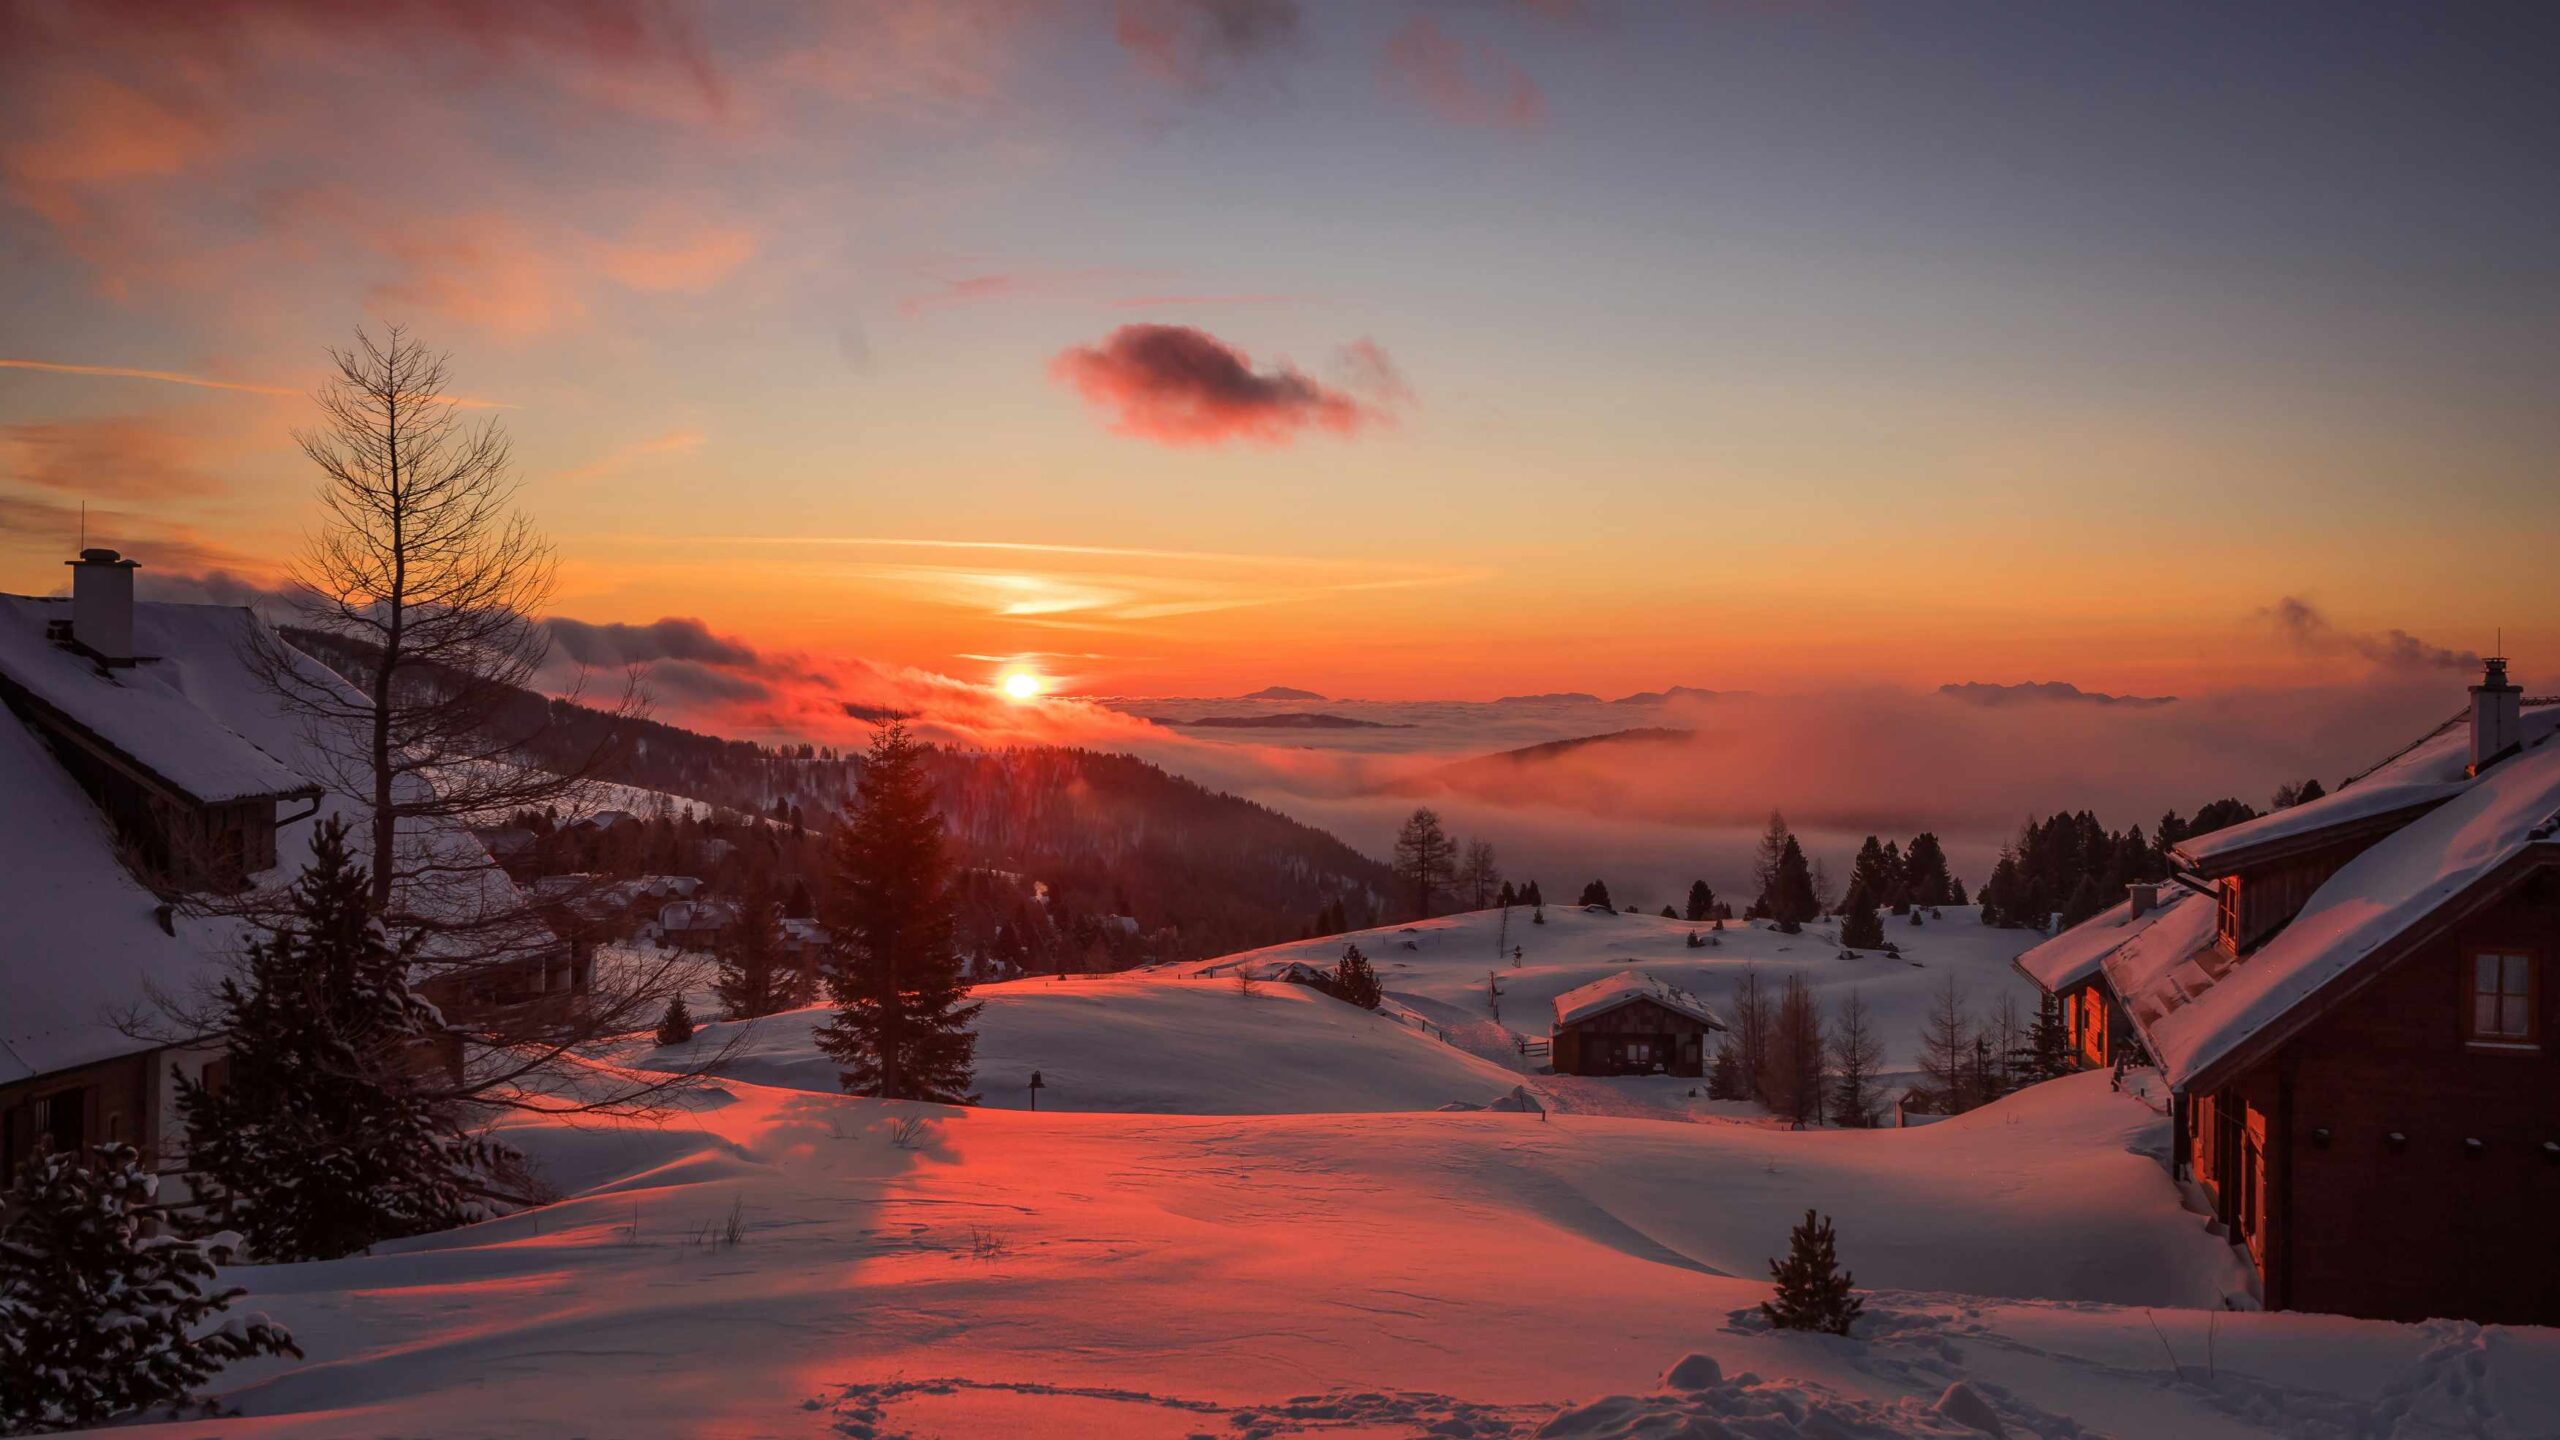 Winter wonderland, Falkertsee, Austria